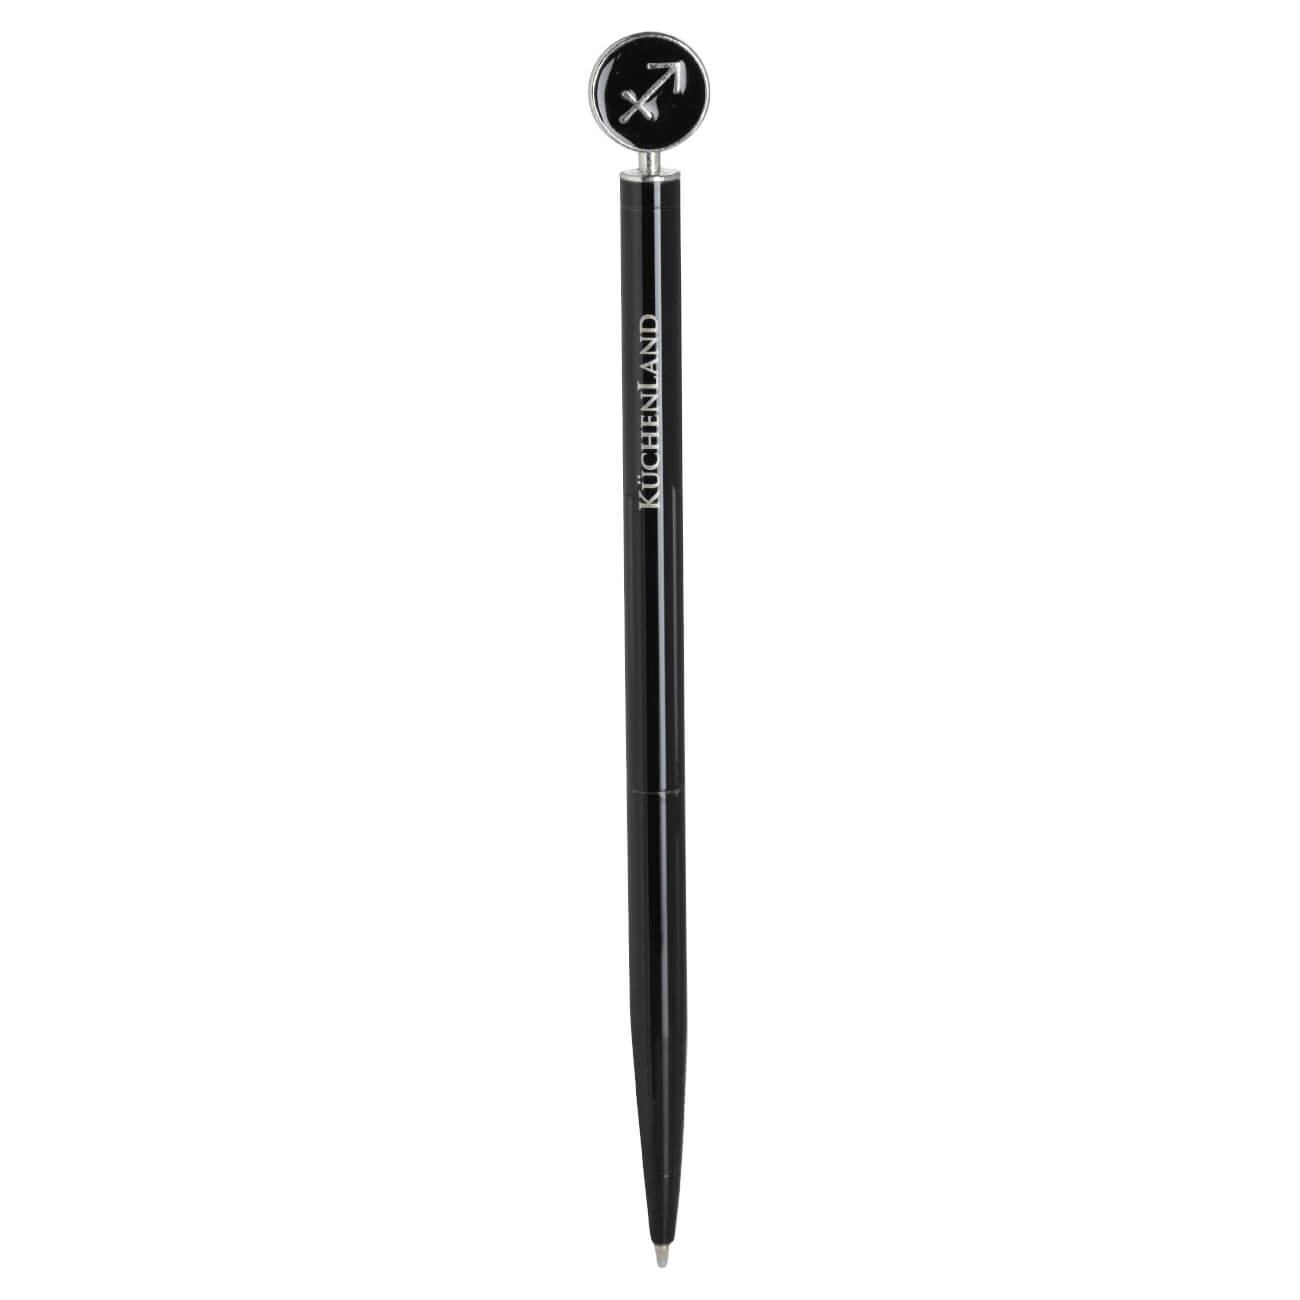 Ручка шариковая, 15 см, с фигуркой, сталь, черно-серебристая, Стрелец, Zodiac ручка подарочная шариковая в пластиковом футляре поворотная